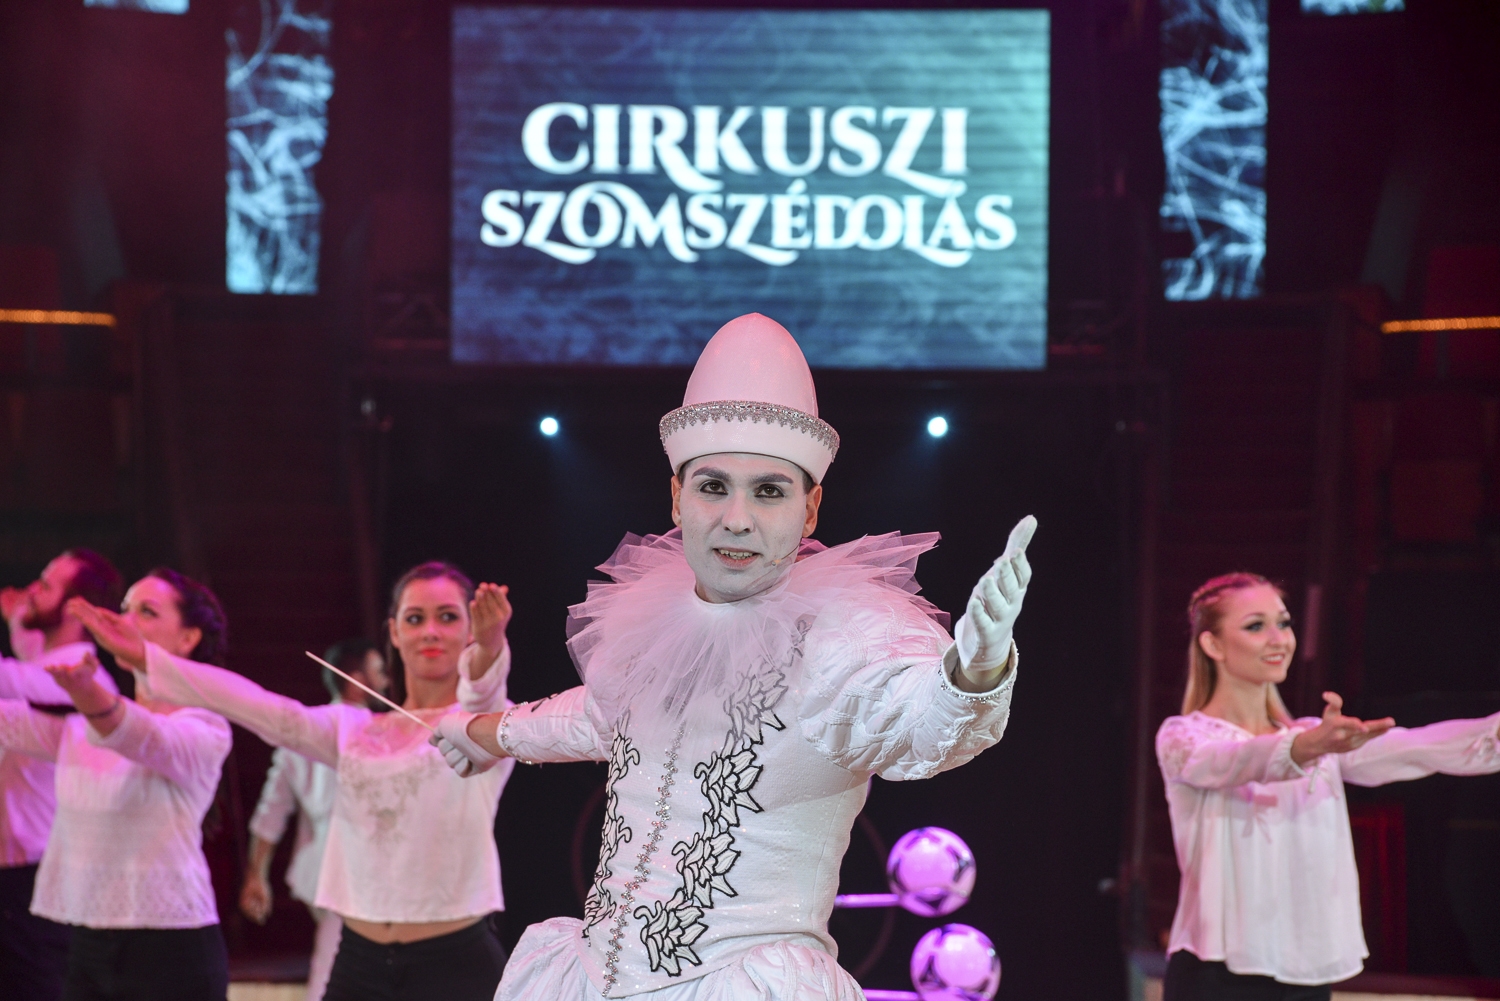 A Fővárosi Nagycirkusz cirkuszszakmai díszbemutató keretében mutatta be Cirkuszi szomszédolás című új műsorát